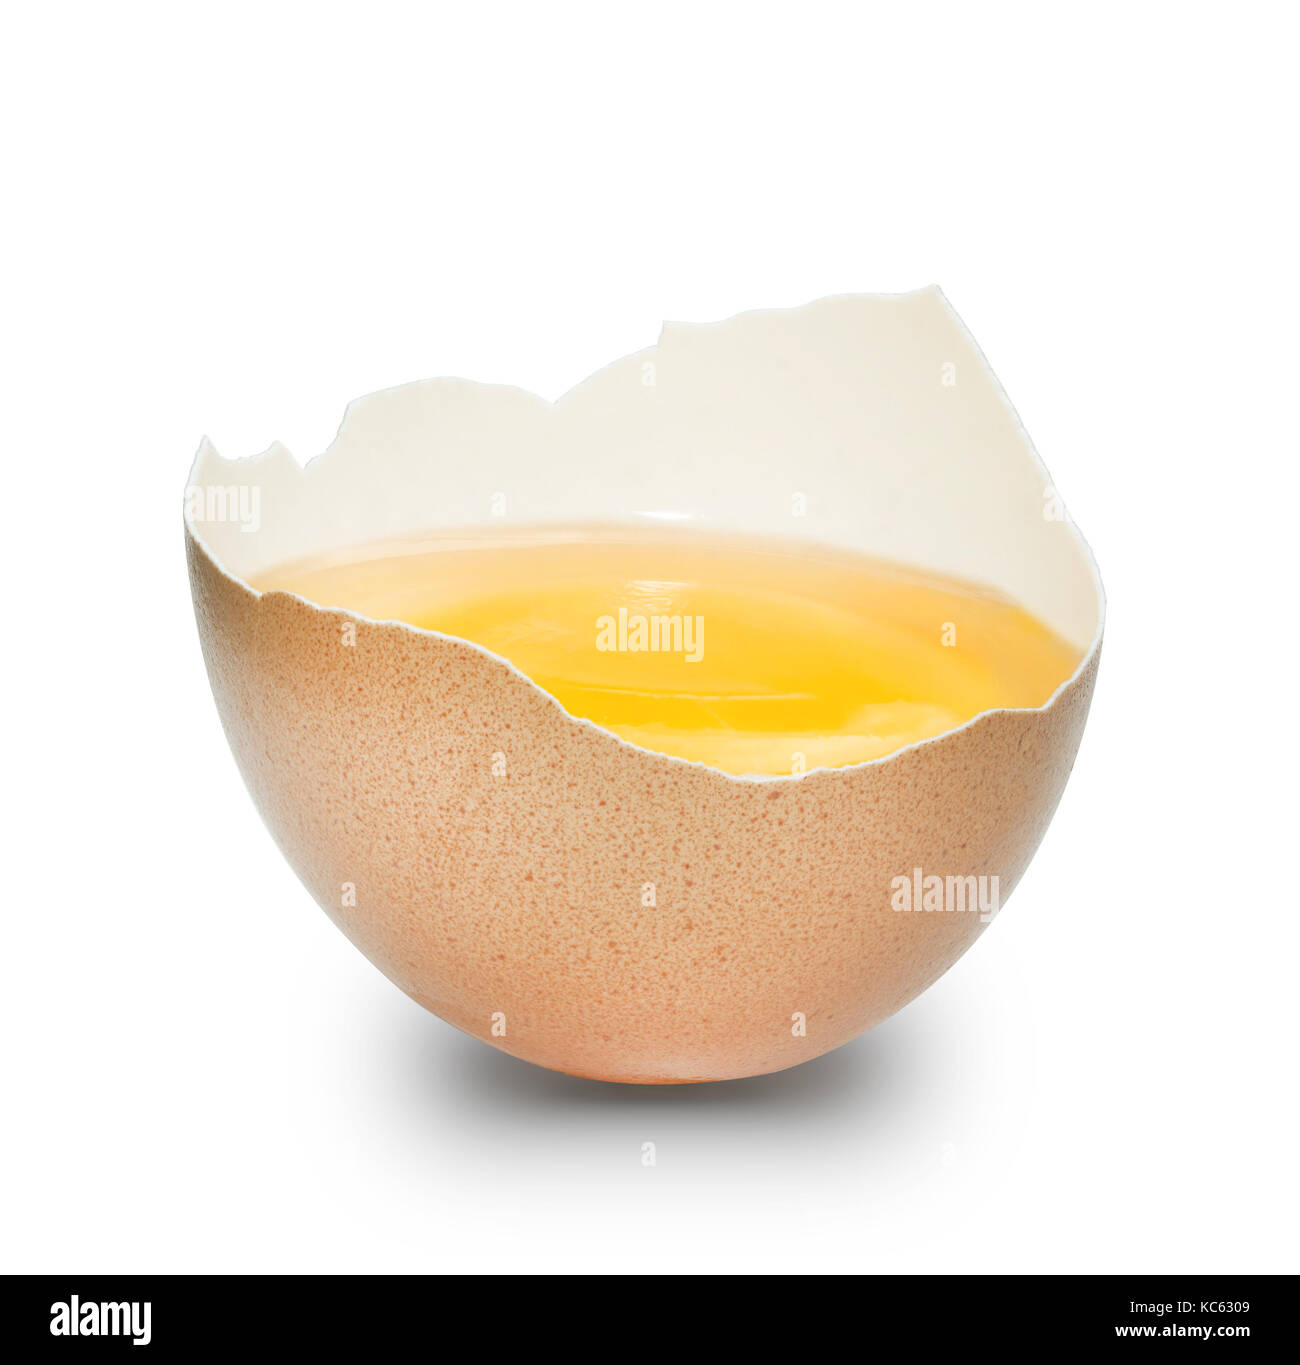 La metà di un uovo di gallina che mostra di tuorlo giallo, bianco e marrone pallido shell, sfondo bianco. Foto Stock